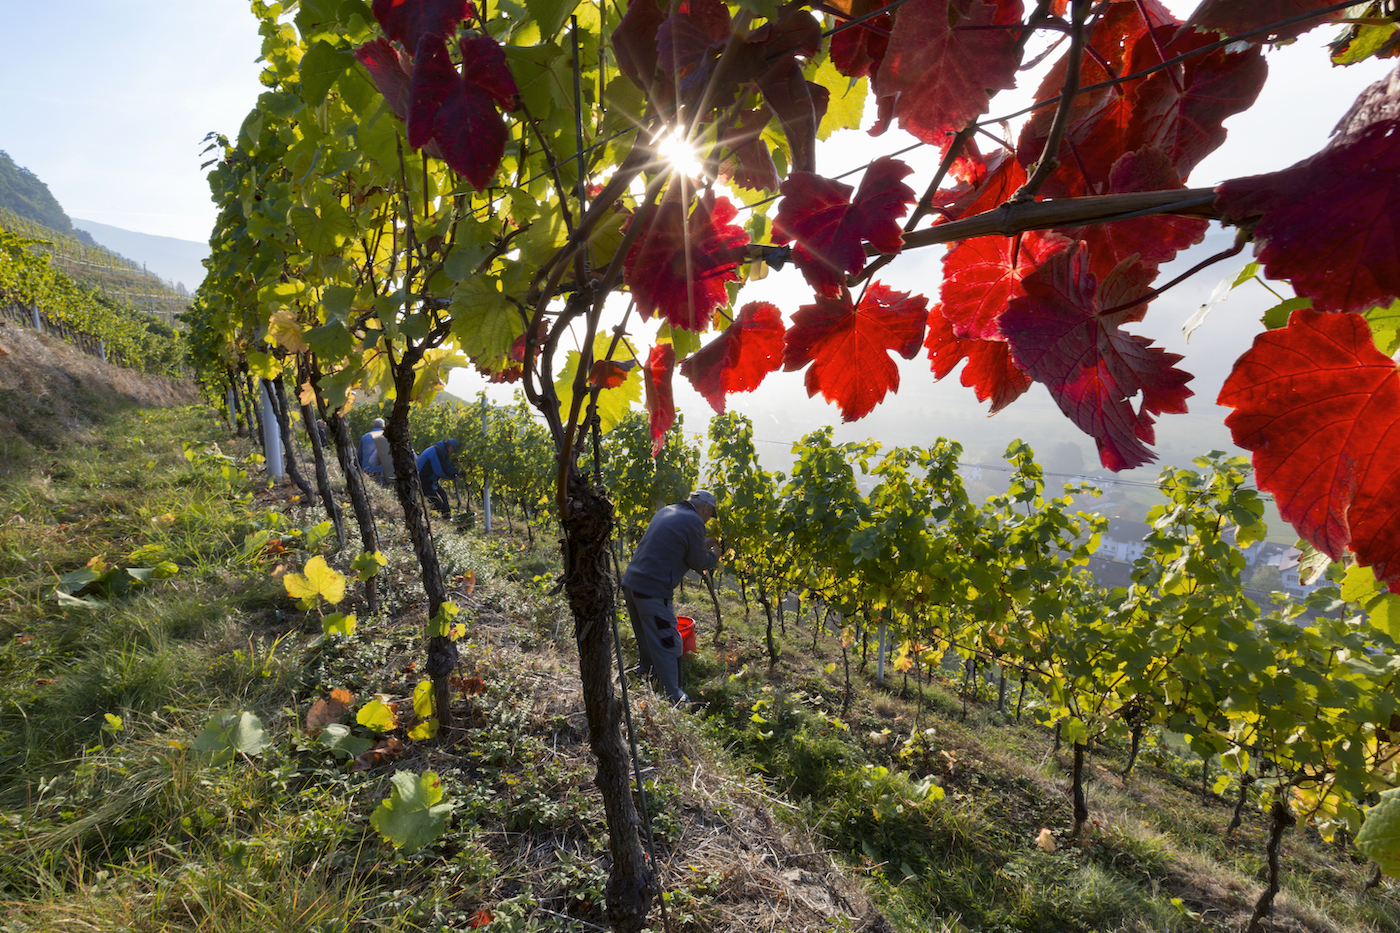 Der Blick fällt durch von der Sonne beschienenes Weinlaub, z.T. in kräftigem Rot, über am Weinberg arbeitende Winzer hinab in ein diesiges Tal.